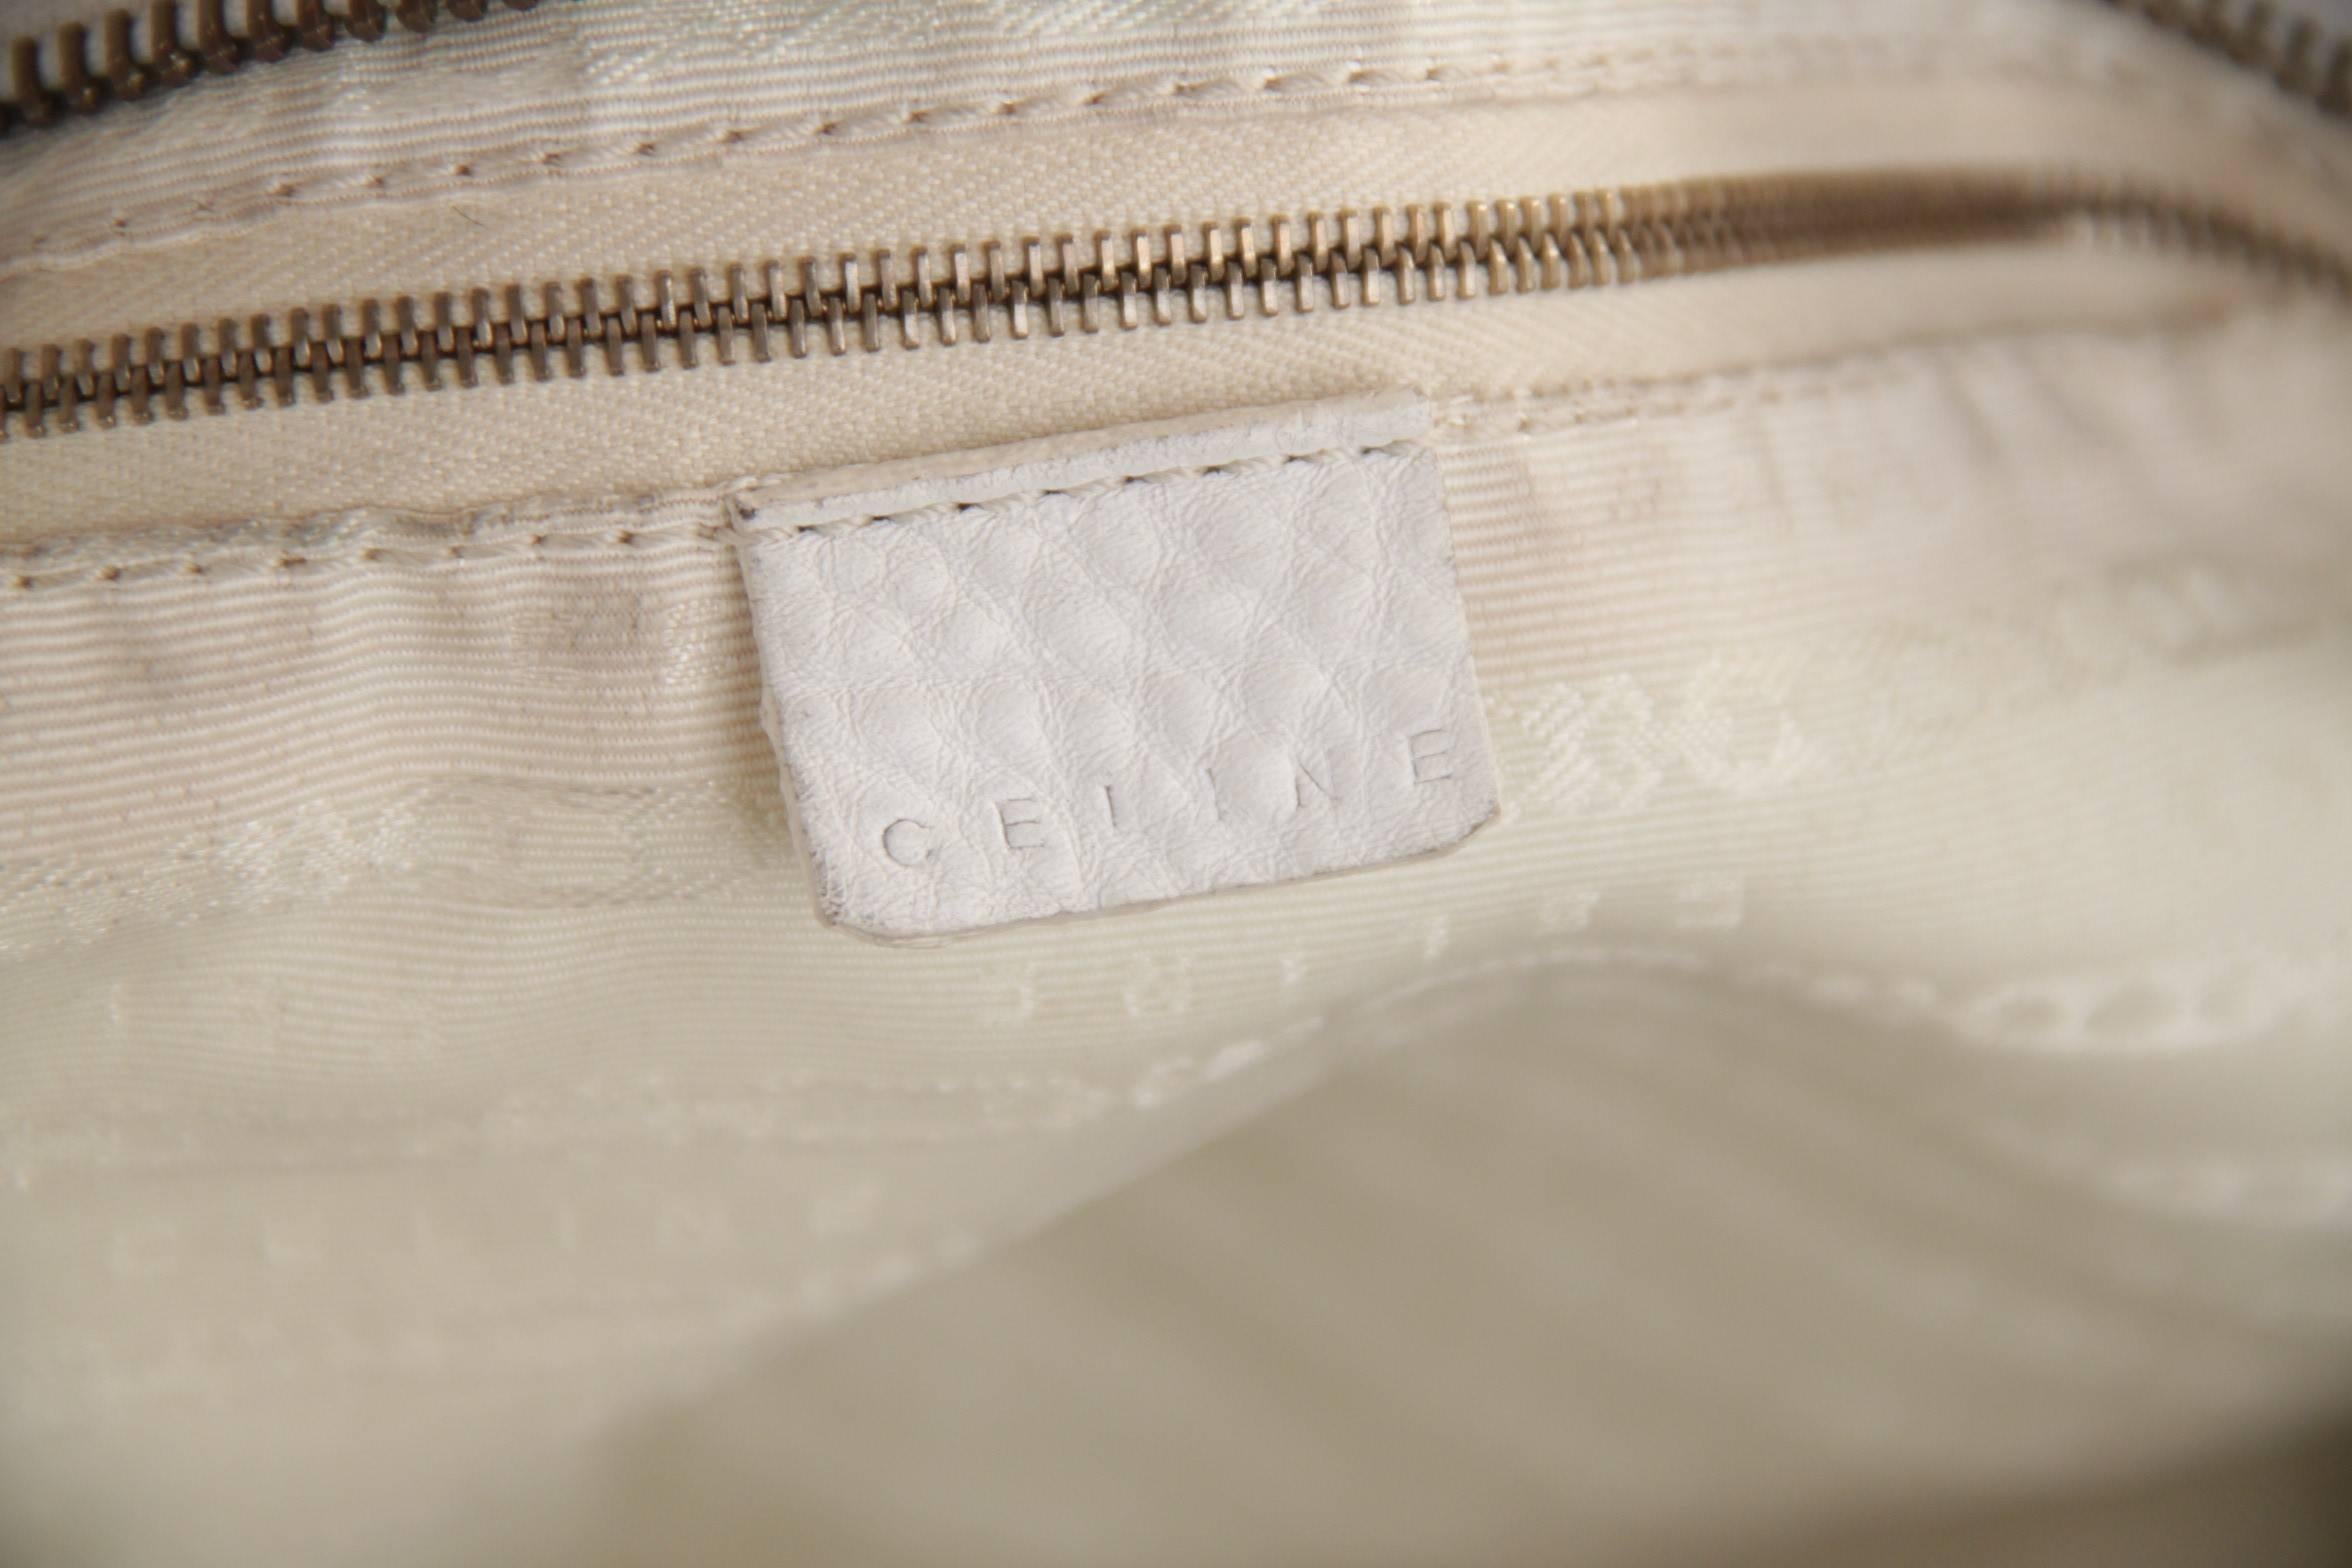 CELINE PARIS White Leather SHOULDER BAG Handbag TOTE w/ STUDS Detailing 2